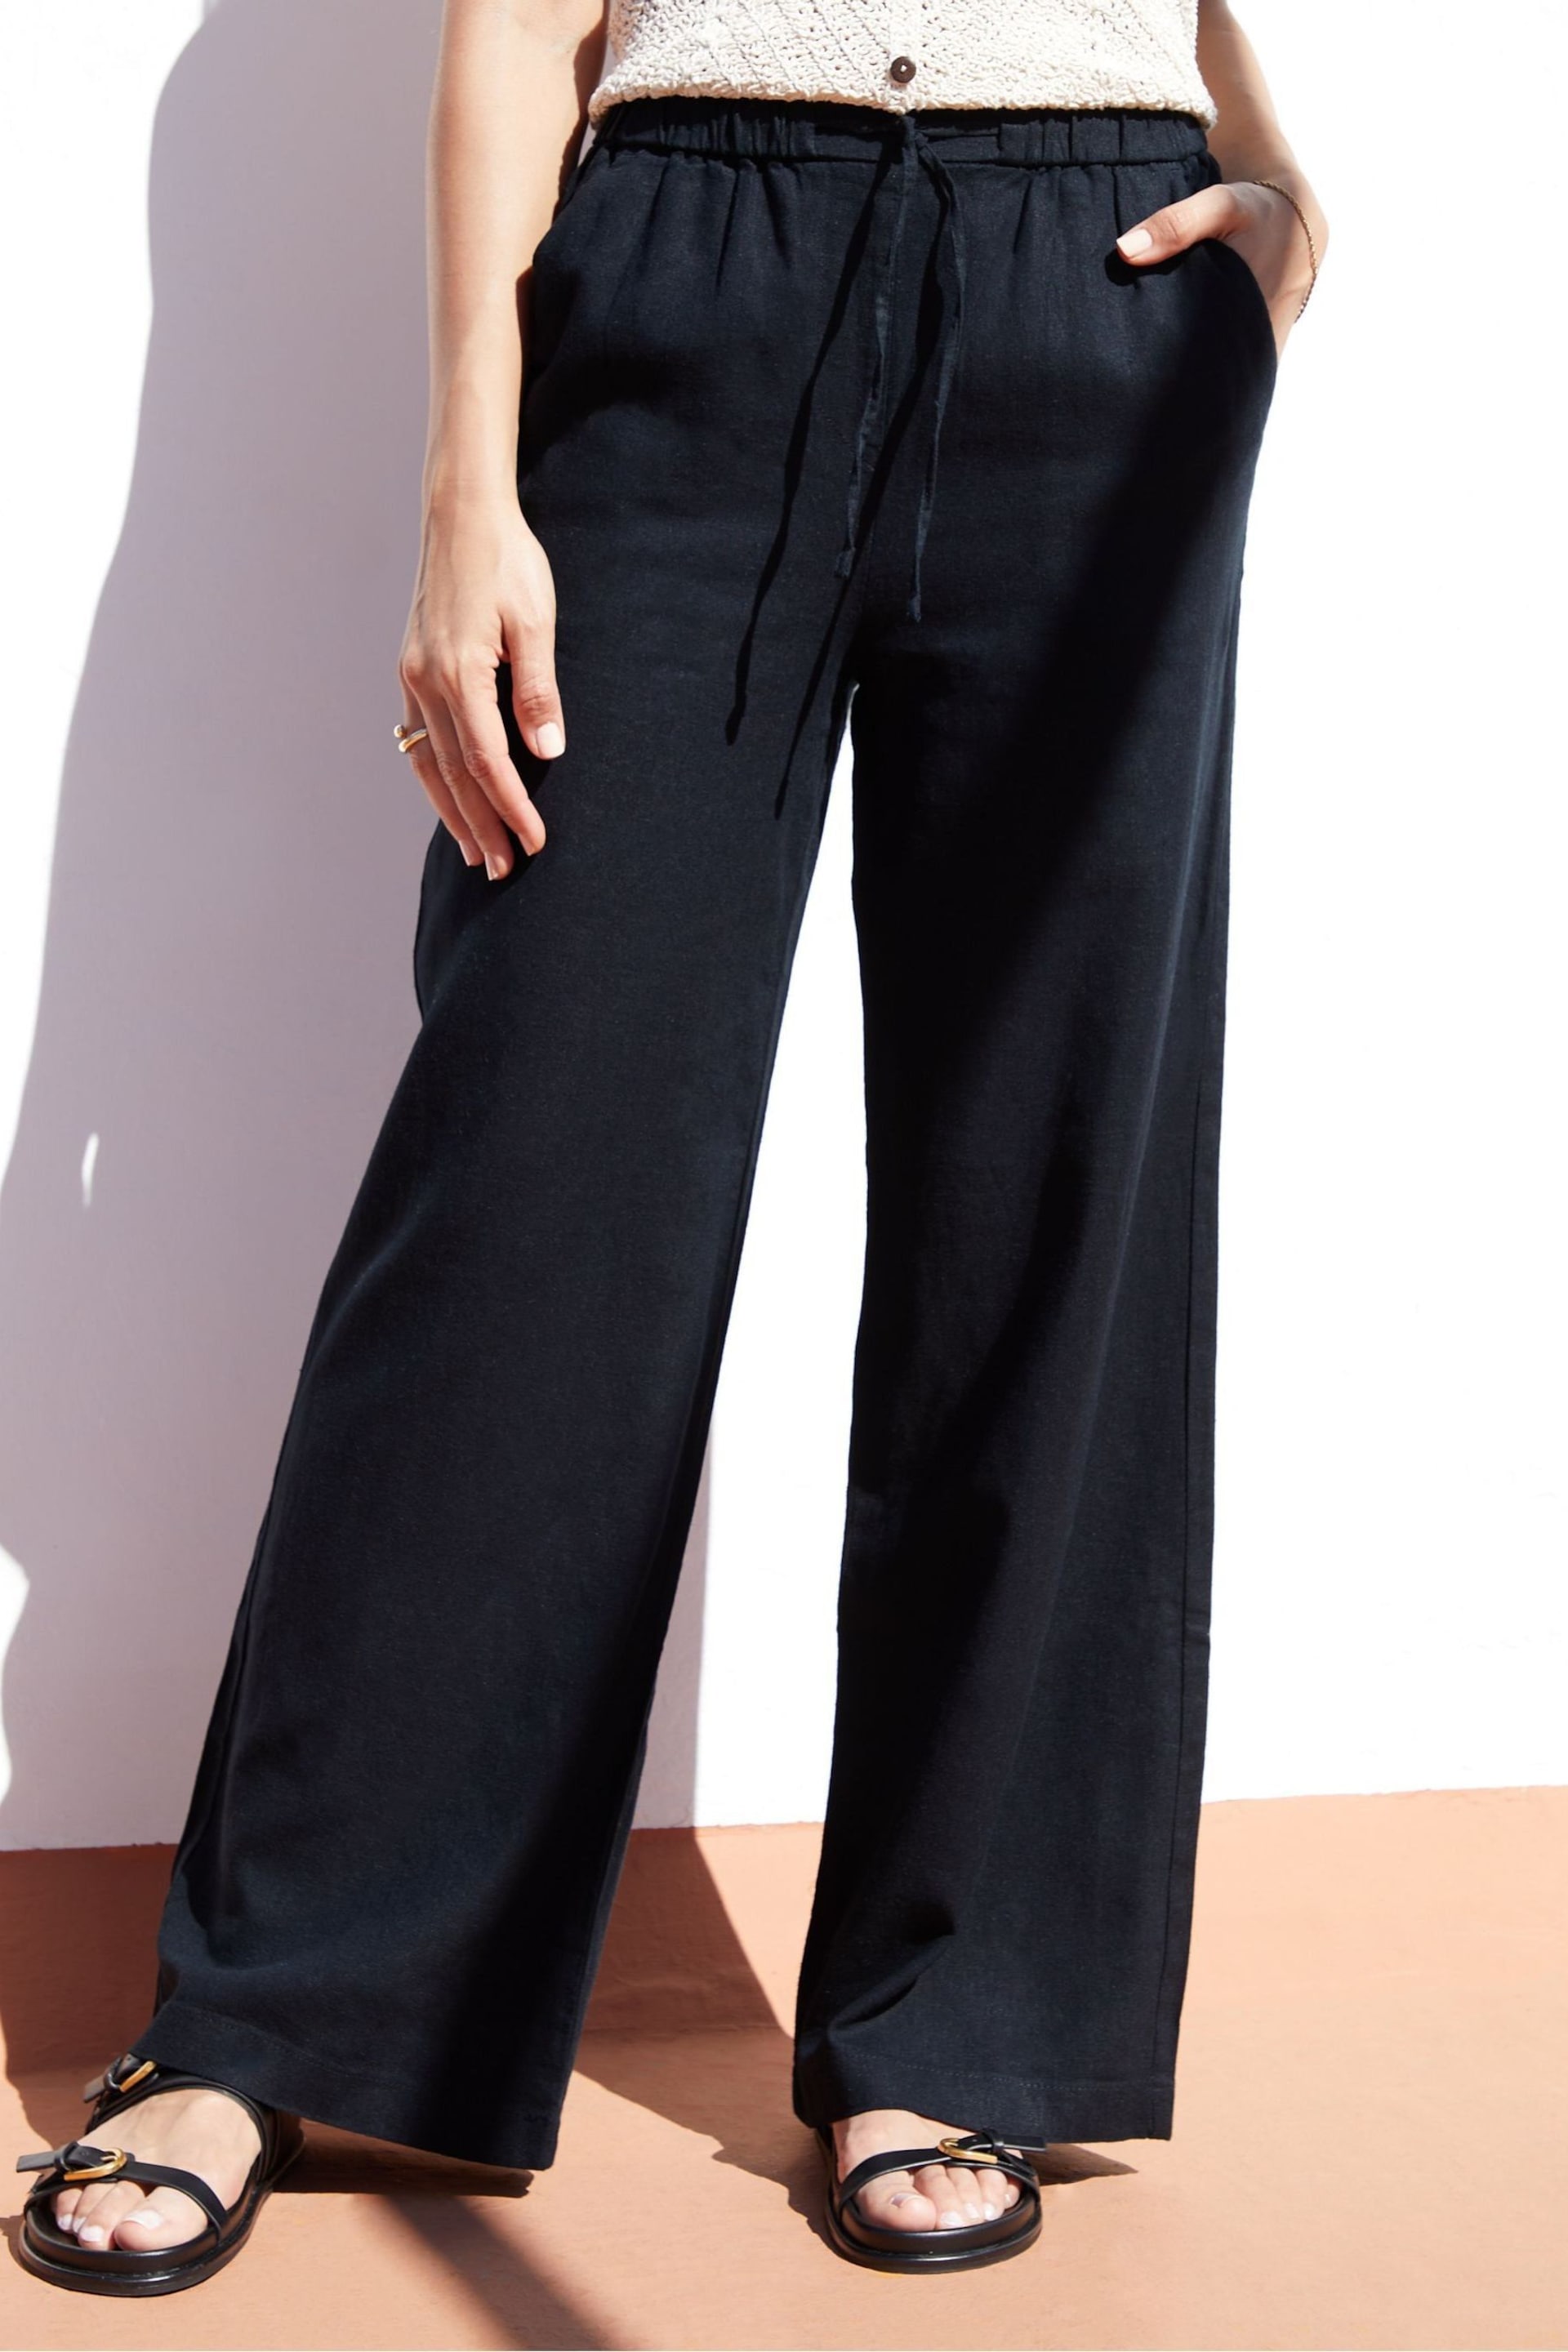 Threadbare Black Linen Blend Wide Leg Trousers - Image 1 of 4